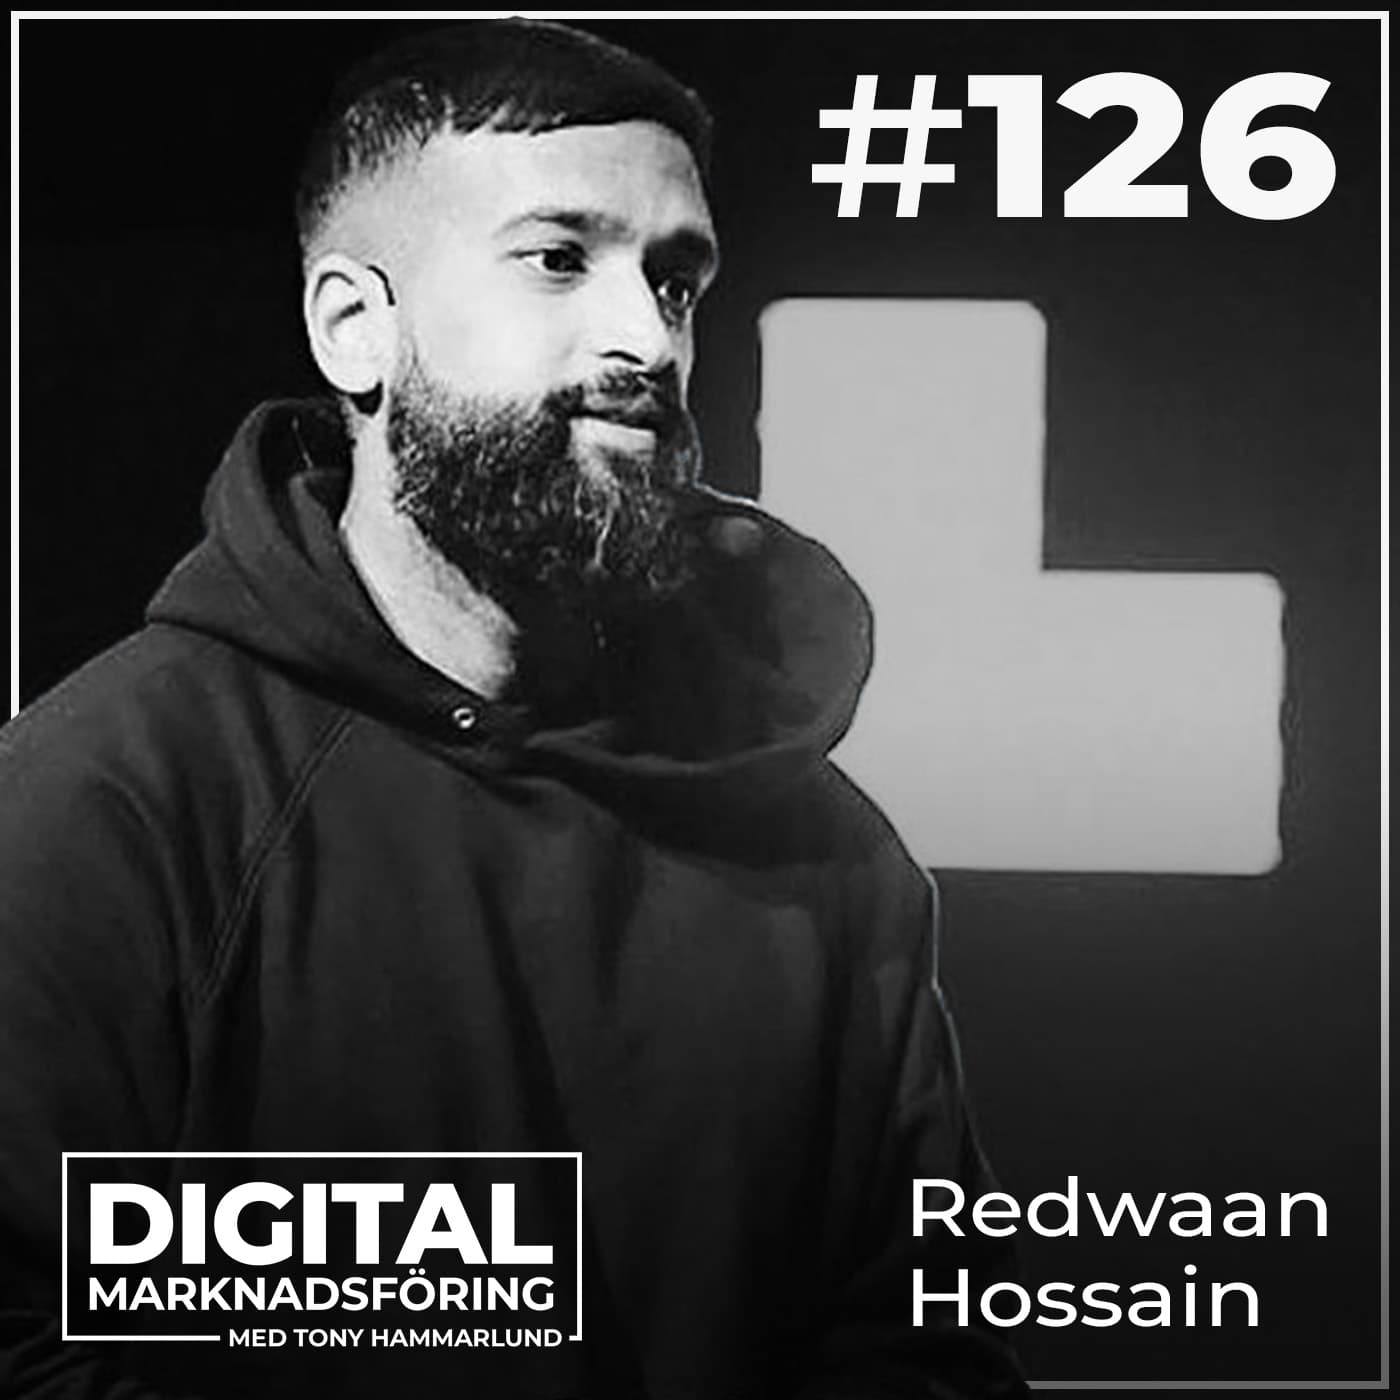 Adidas och inkluderande marknadsföring som når miljoner – Redwaan Hossain #126